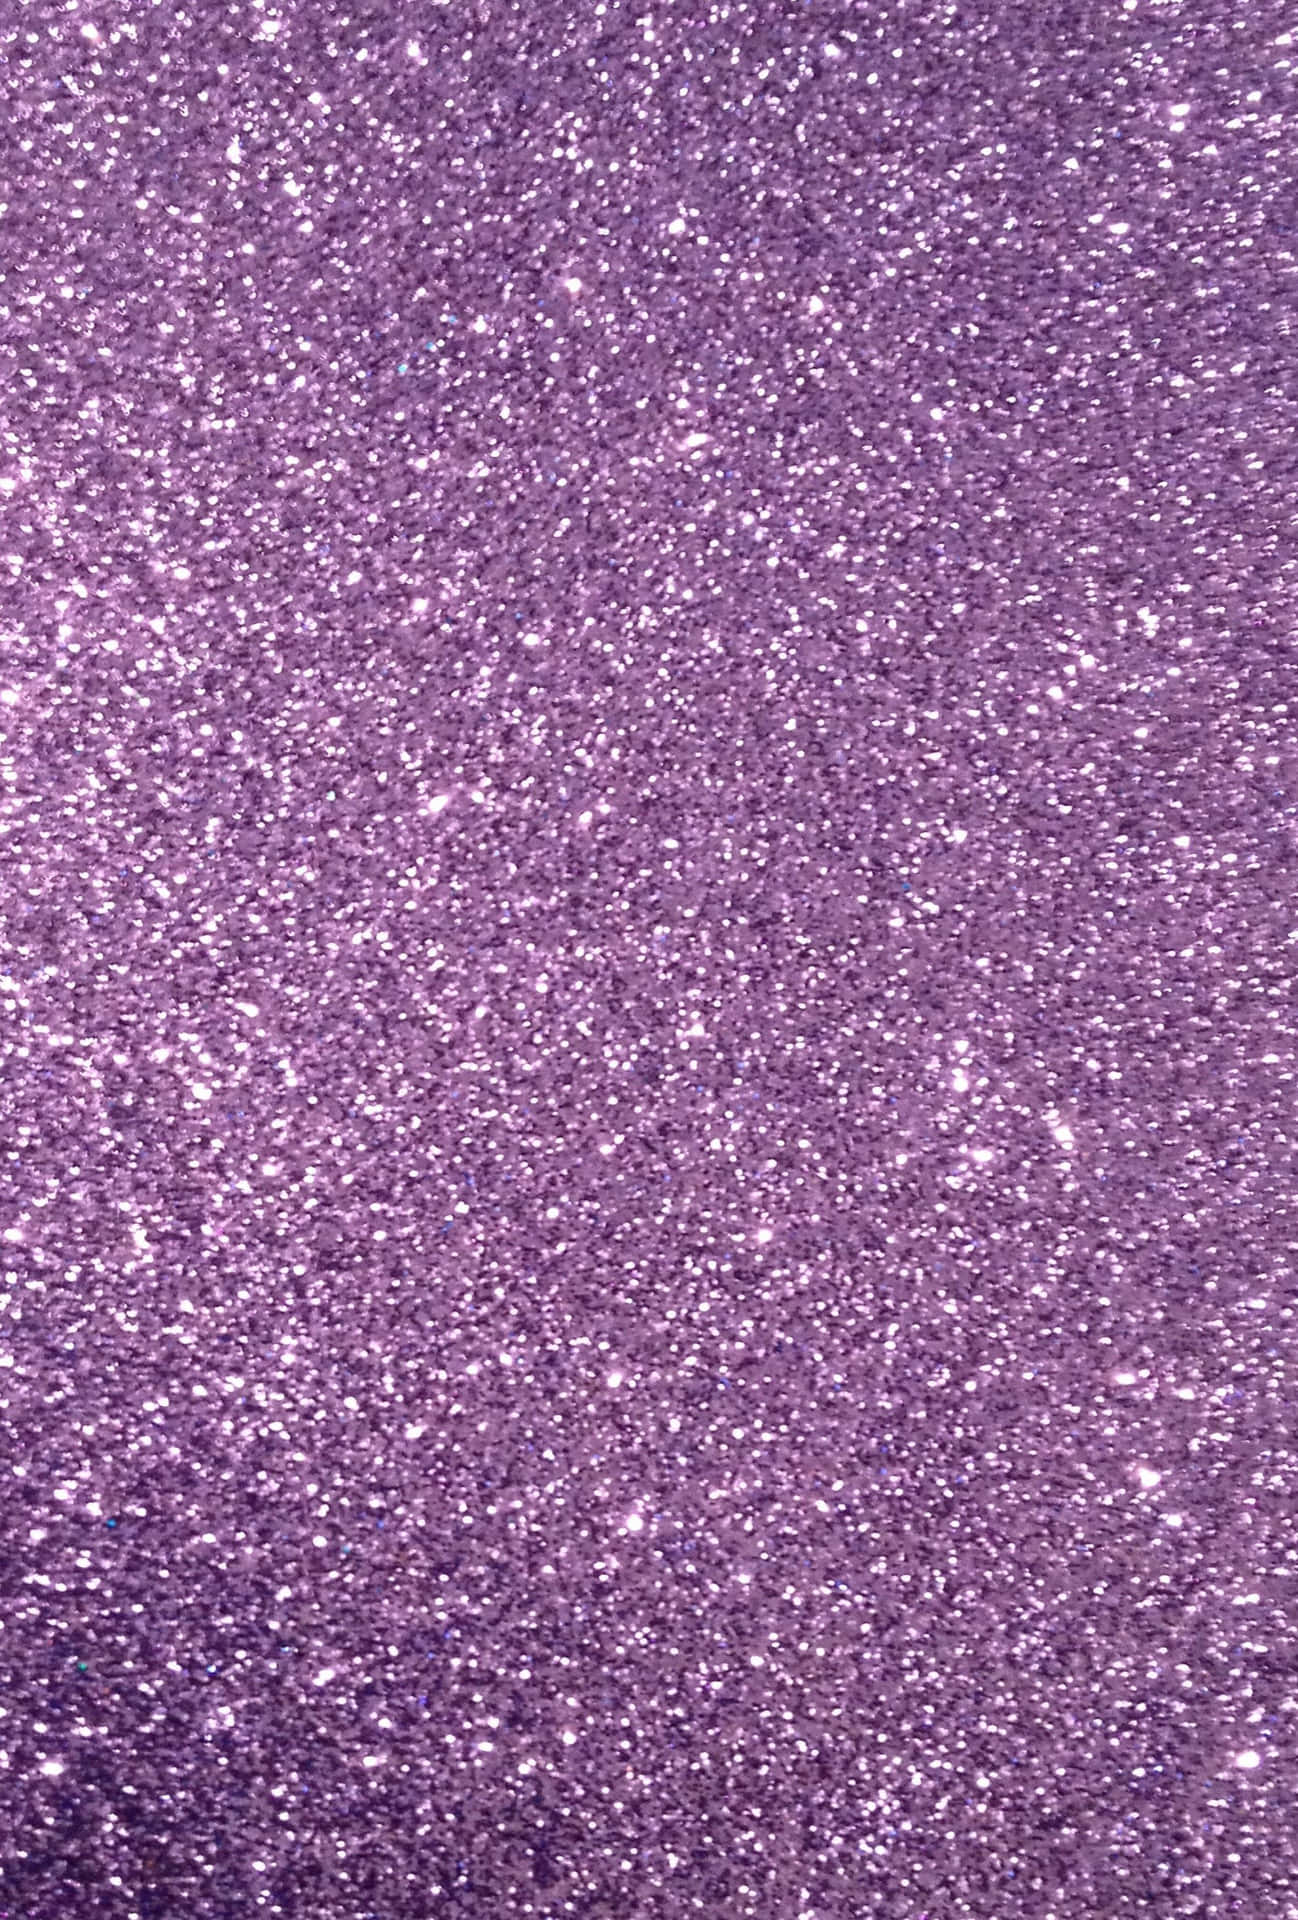 A beautiful light purple glitter background.